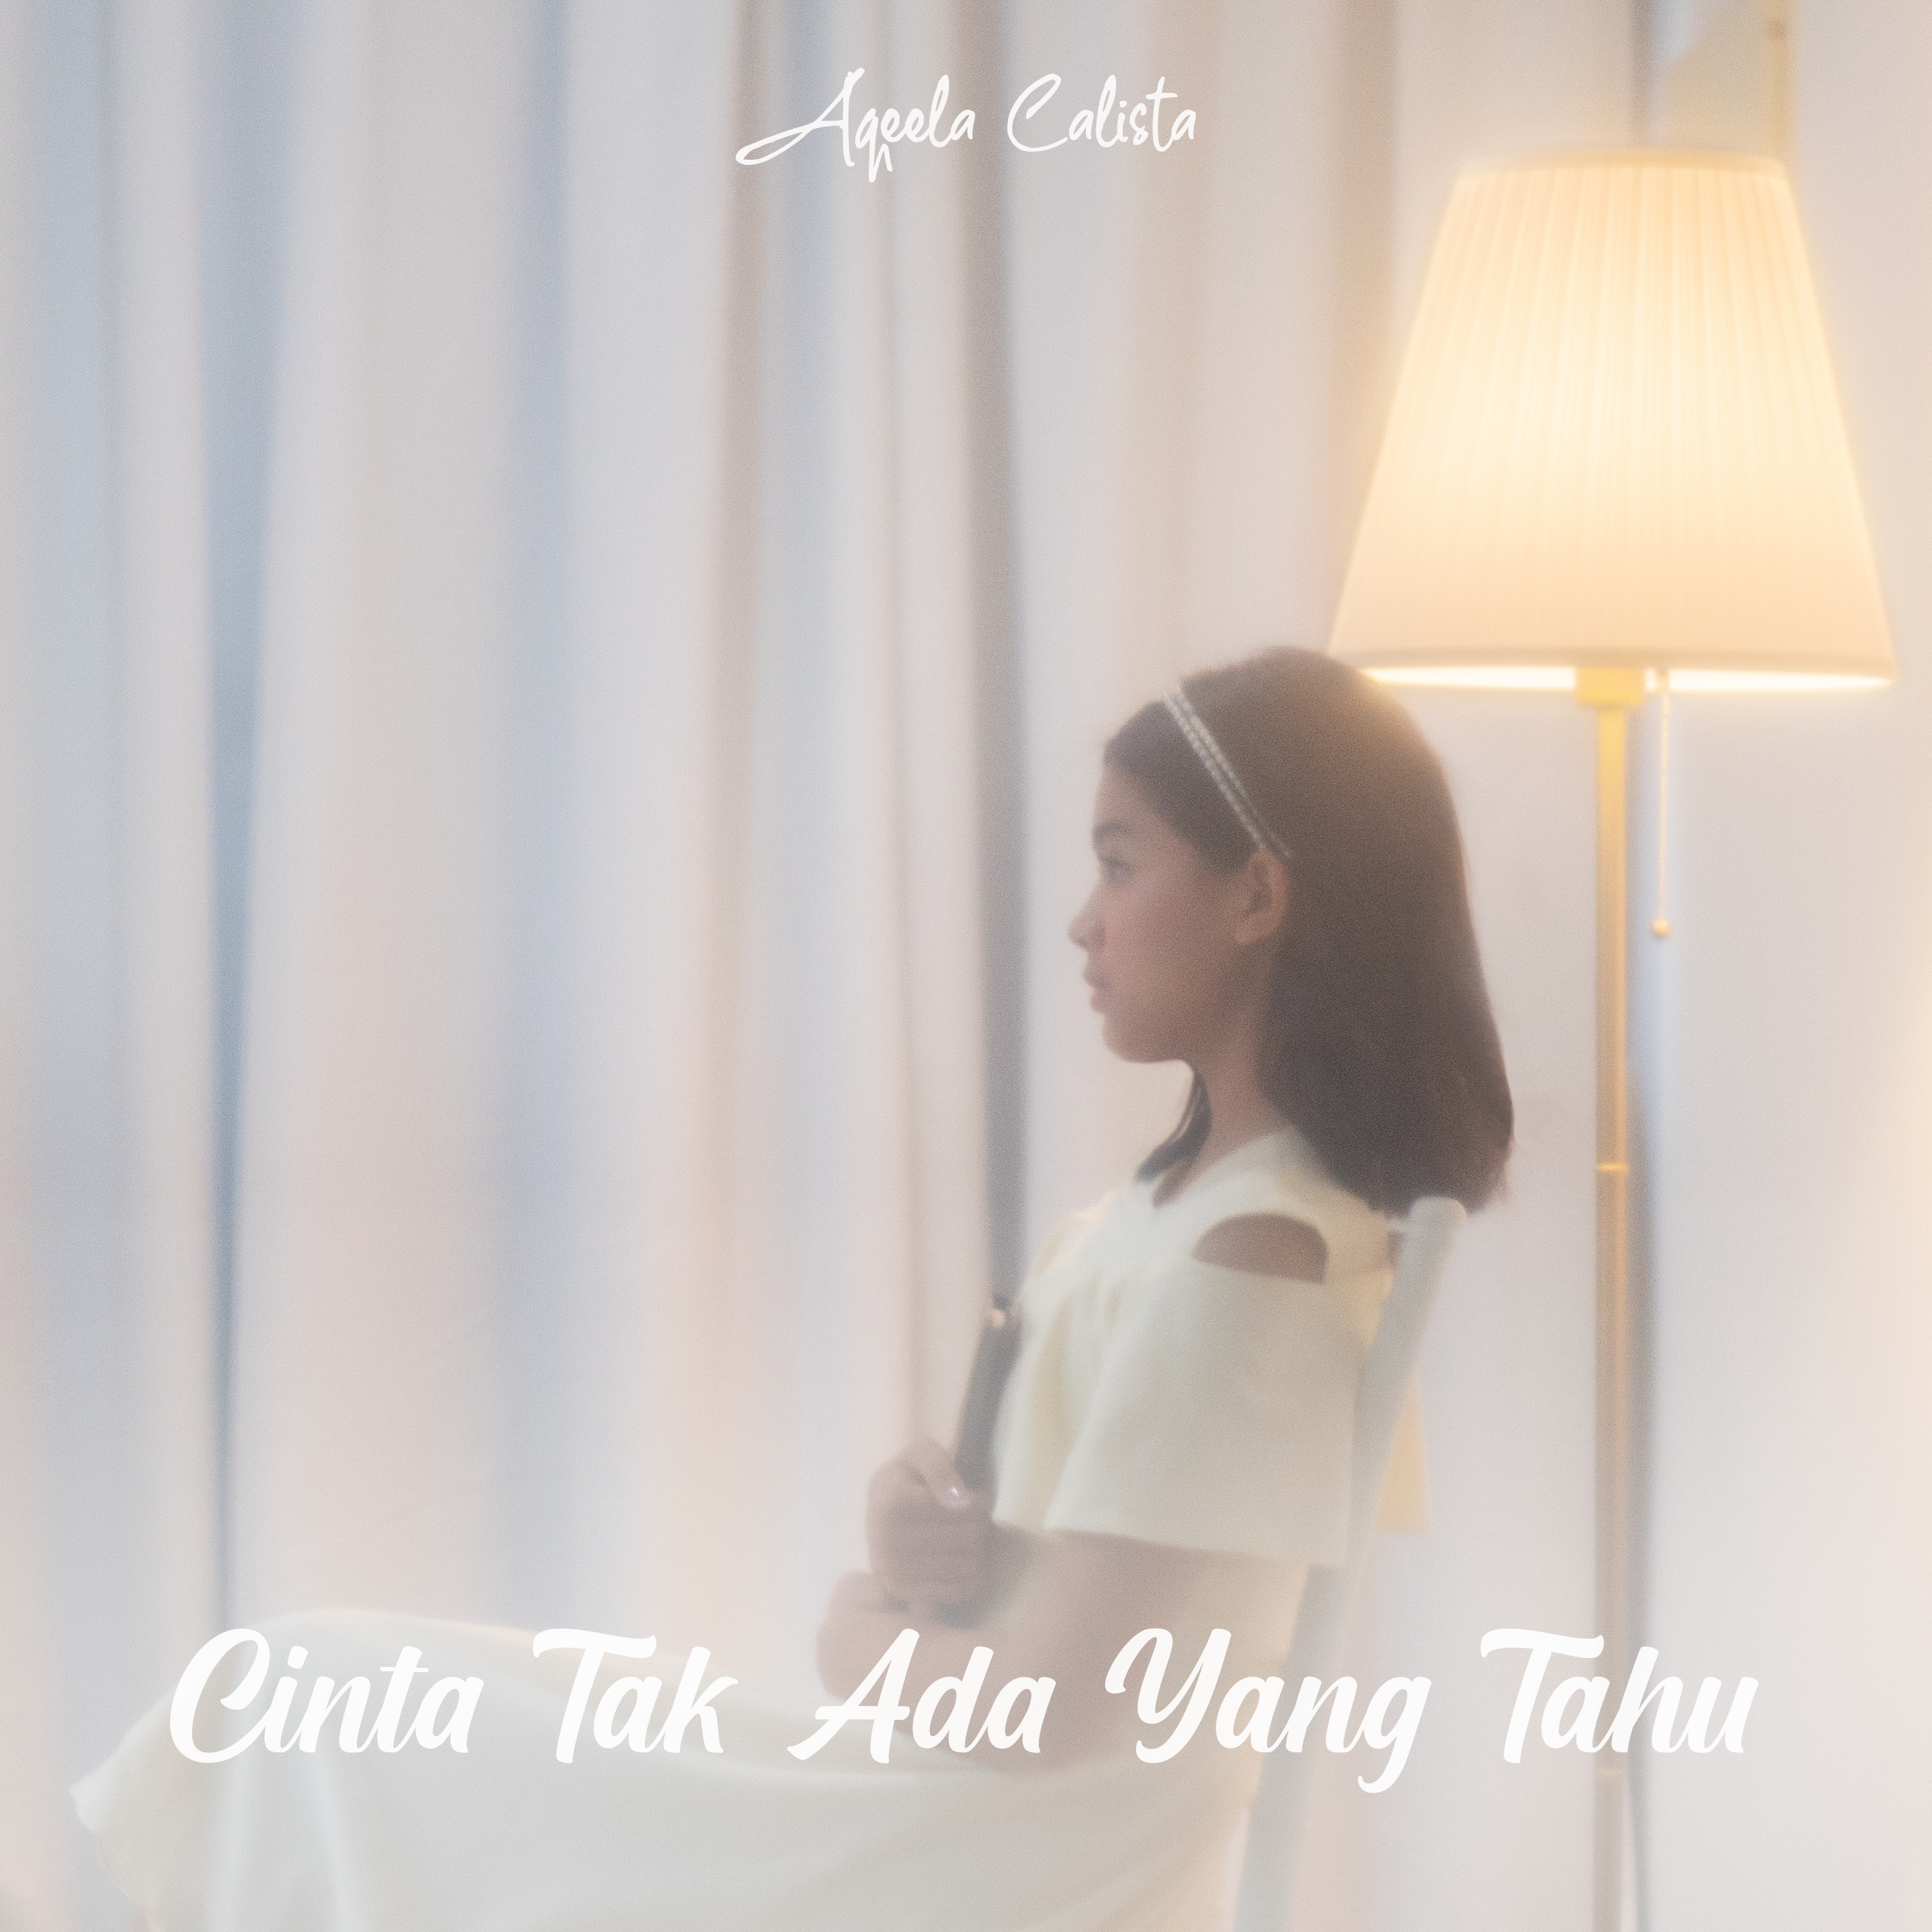 Aqeela Calista Rilis Single 'Cinta Tak Ada yang Tau', Ini Liriknya!